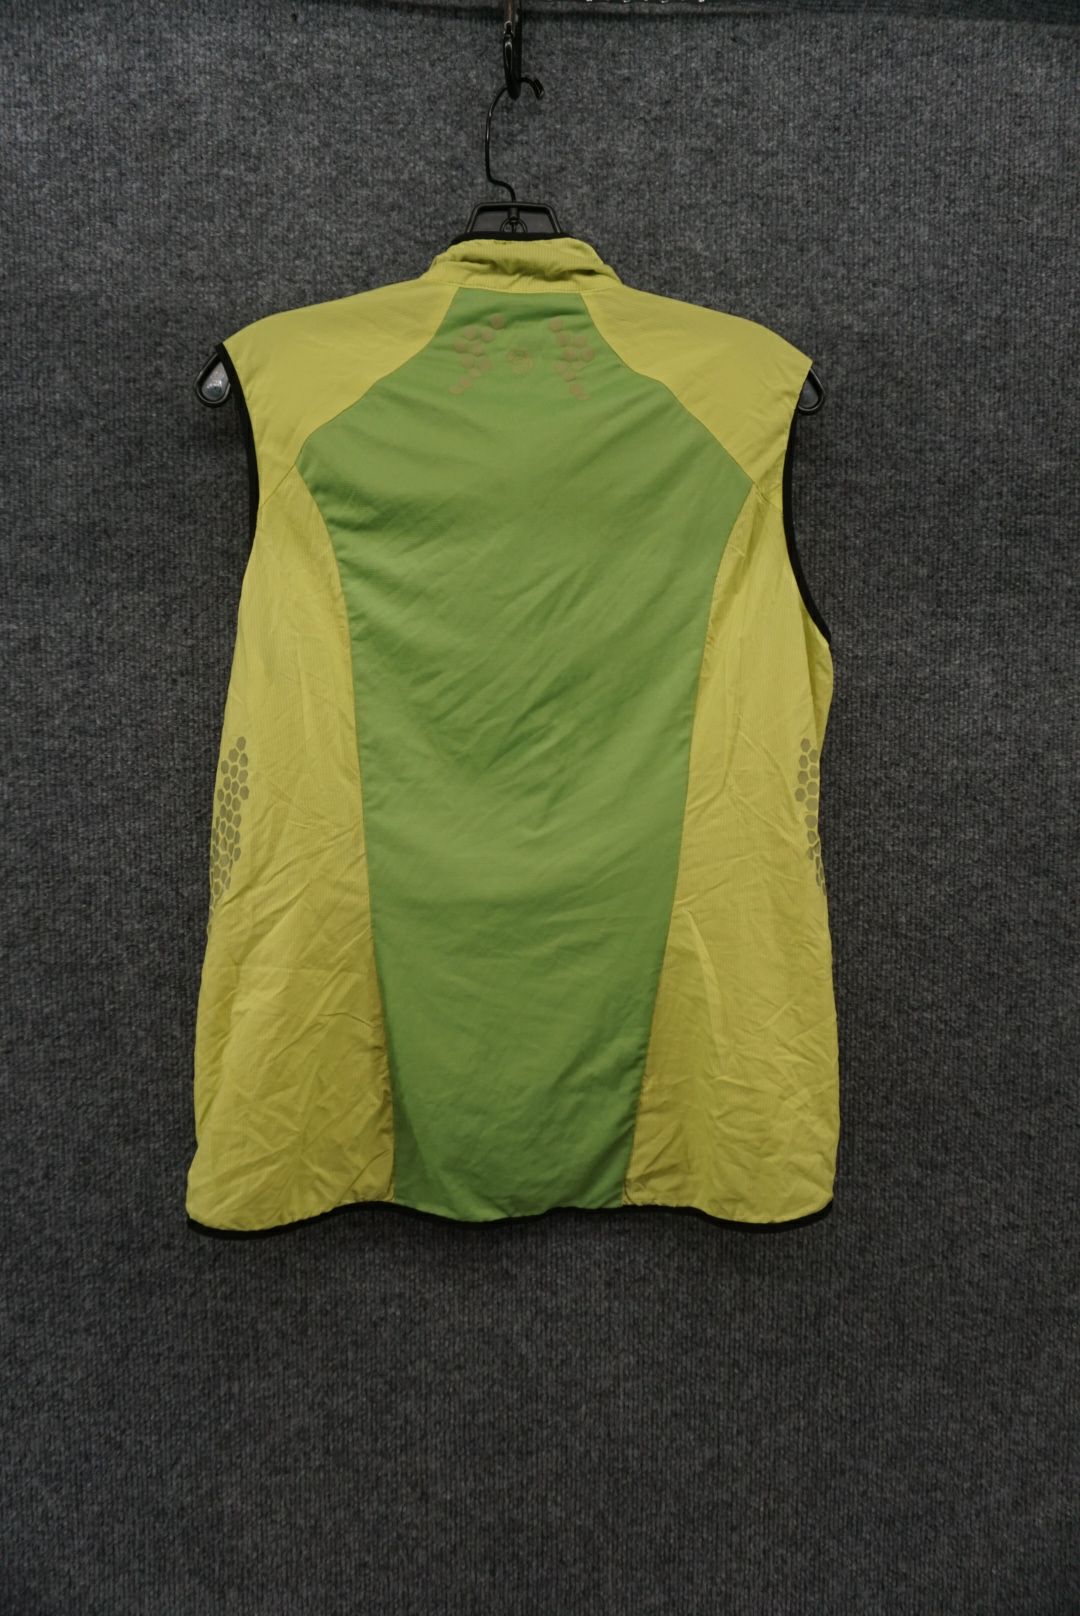 Mountain Hardwear Green Size W Large Women's Windbreaker Vest